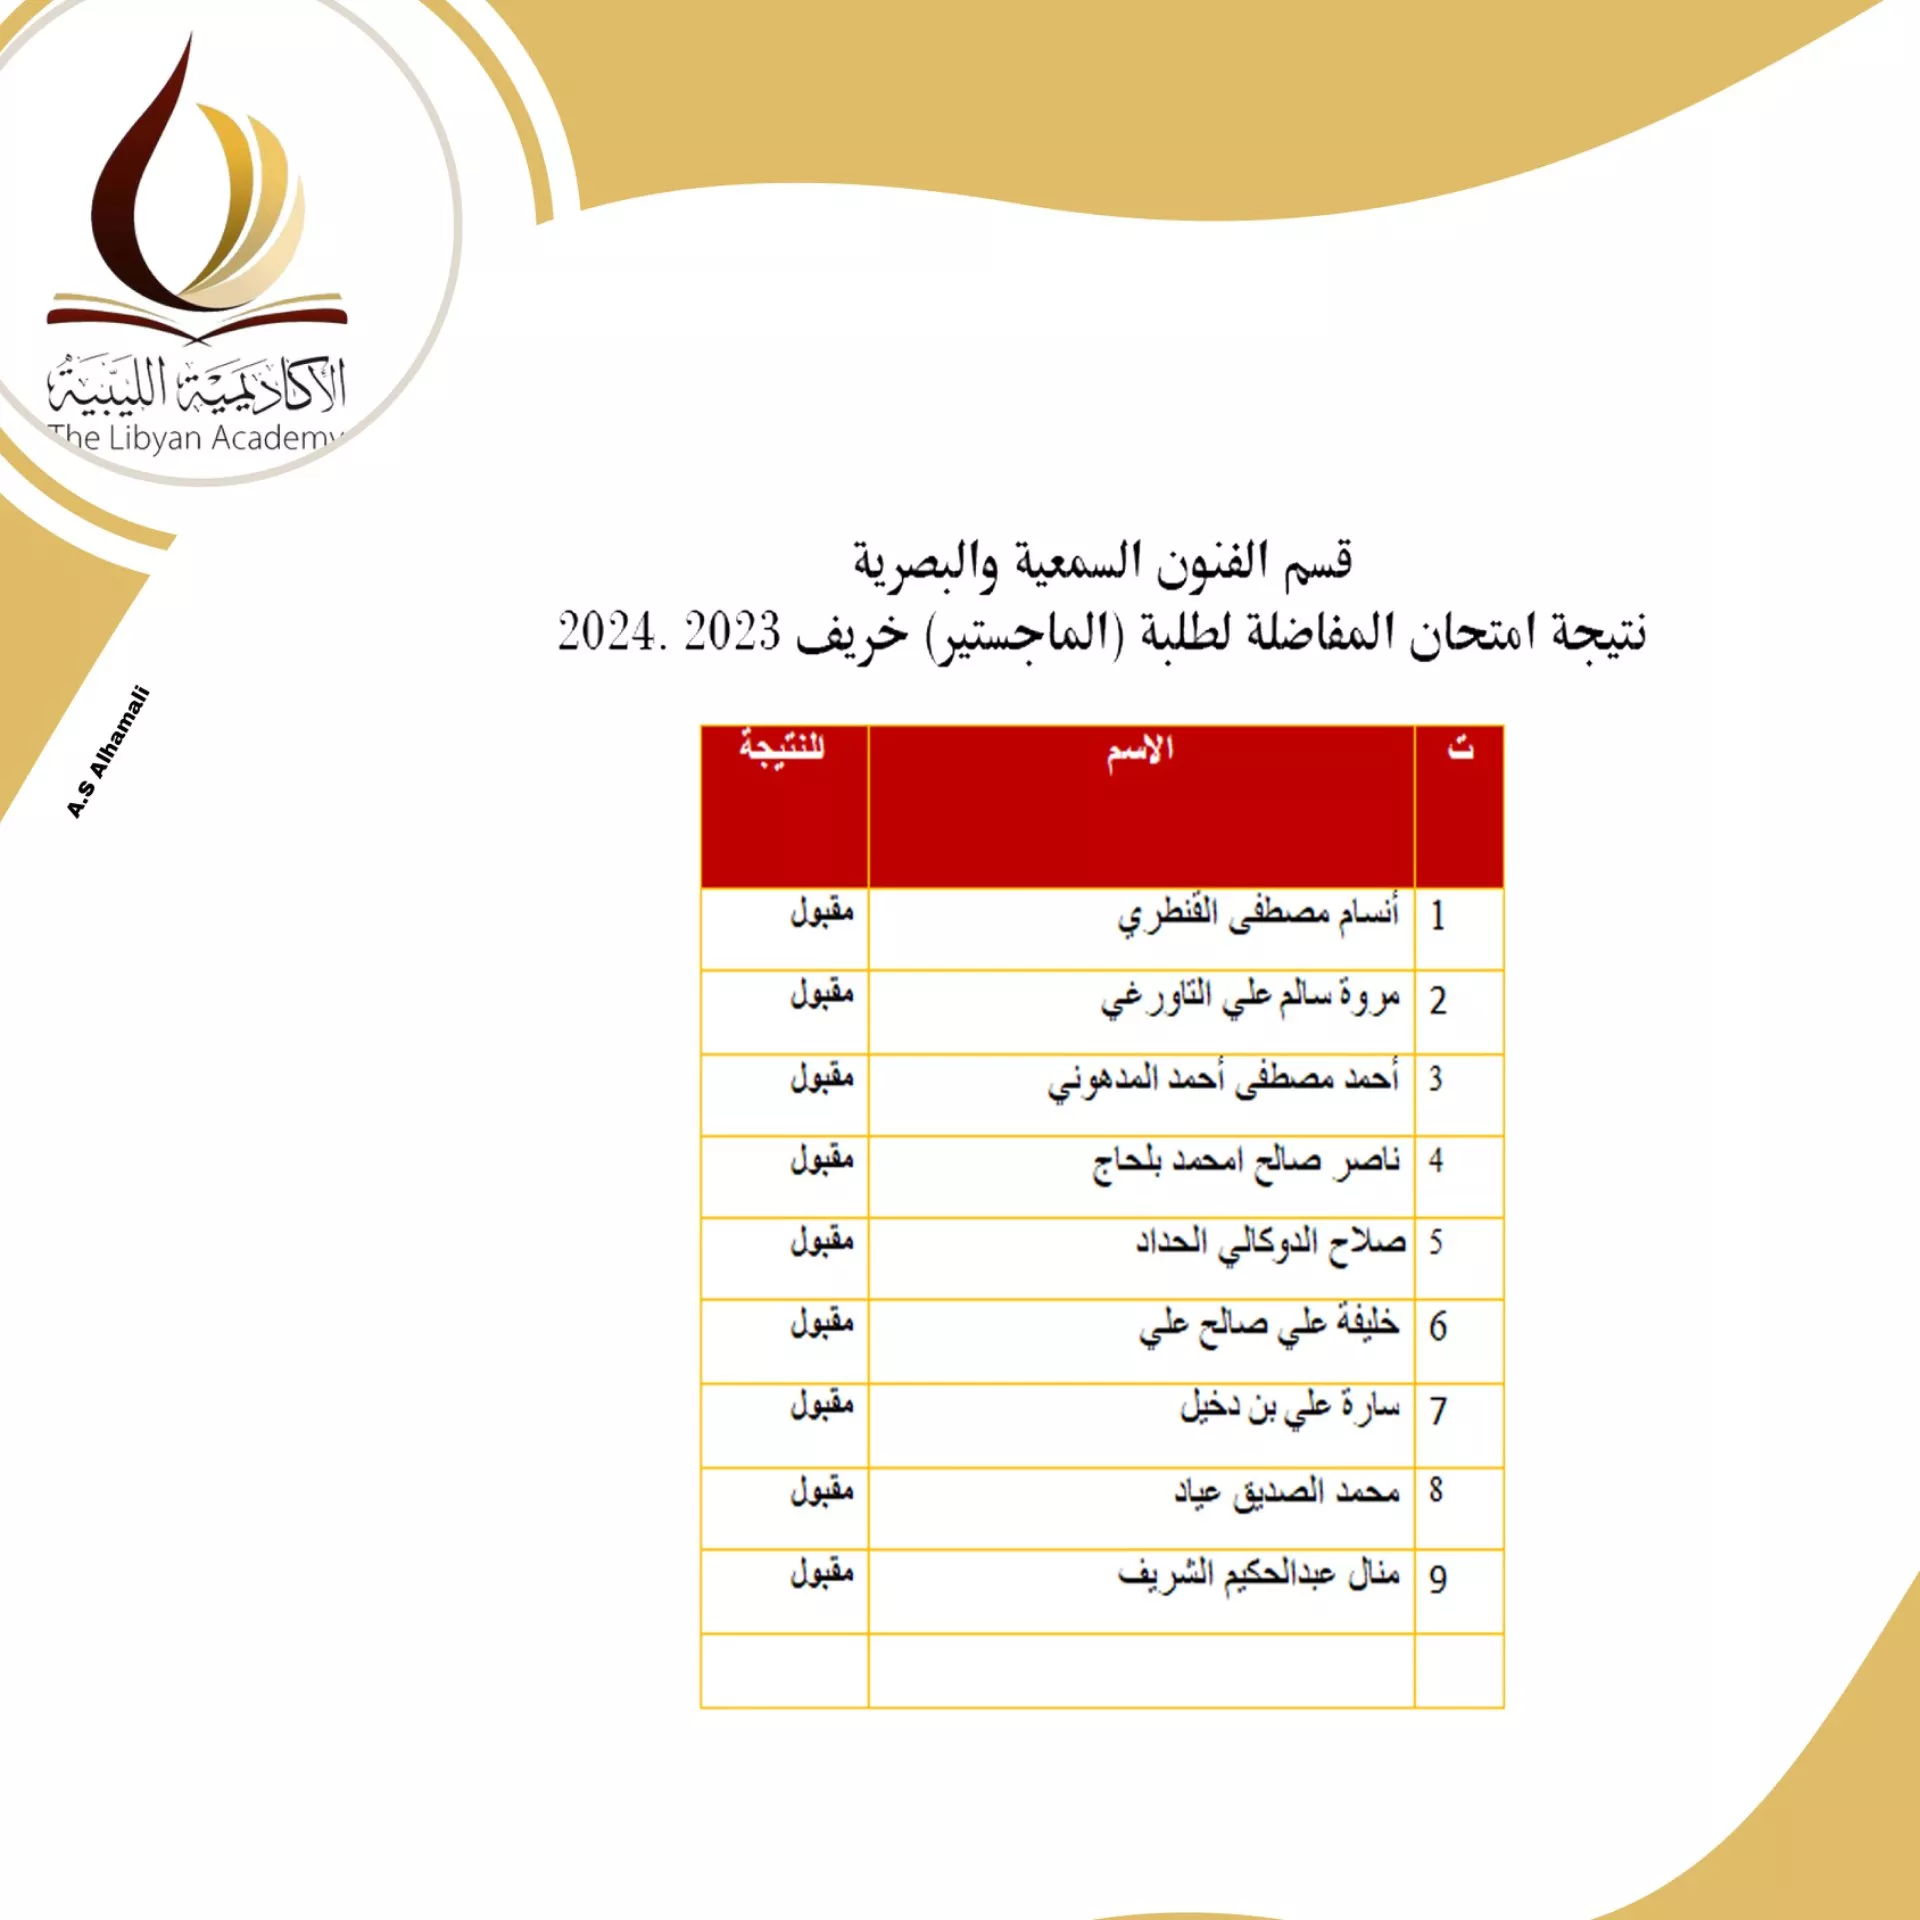 نتائج امتحانات المفاضلة للمتقدمين لدراسة الماجستير بالأكاديمية الليبية للدراسات العليا لمدرسة الاعلام و الفنون للفصل الدراسي خريف 2023/ 2024